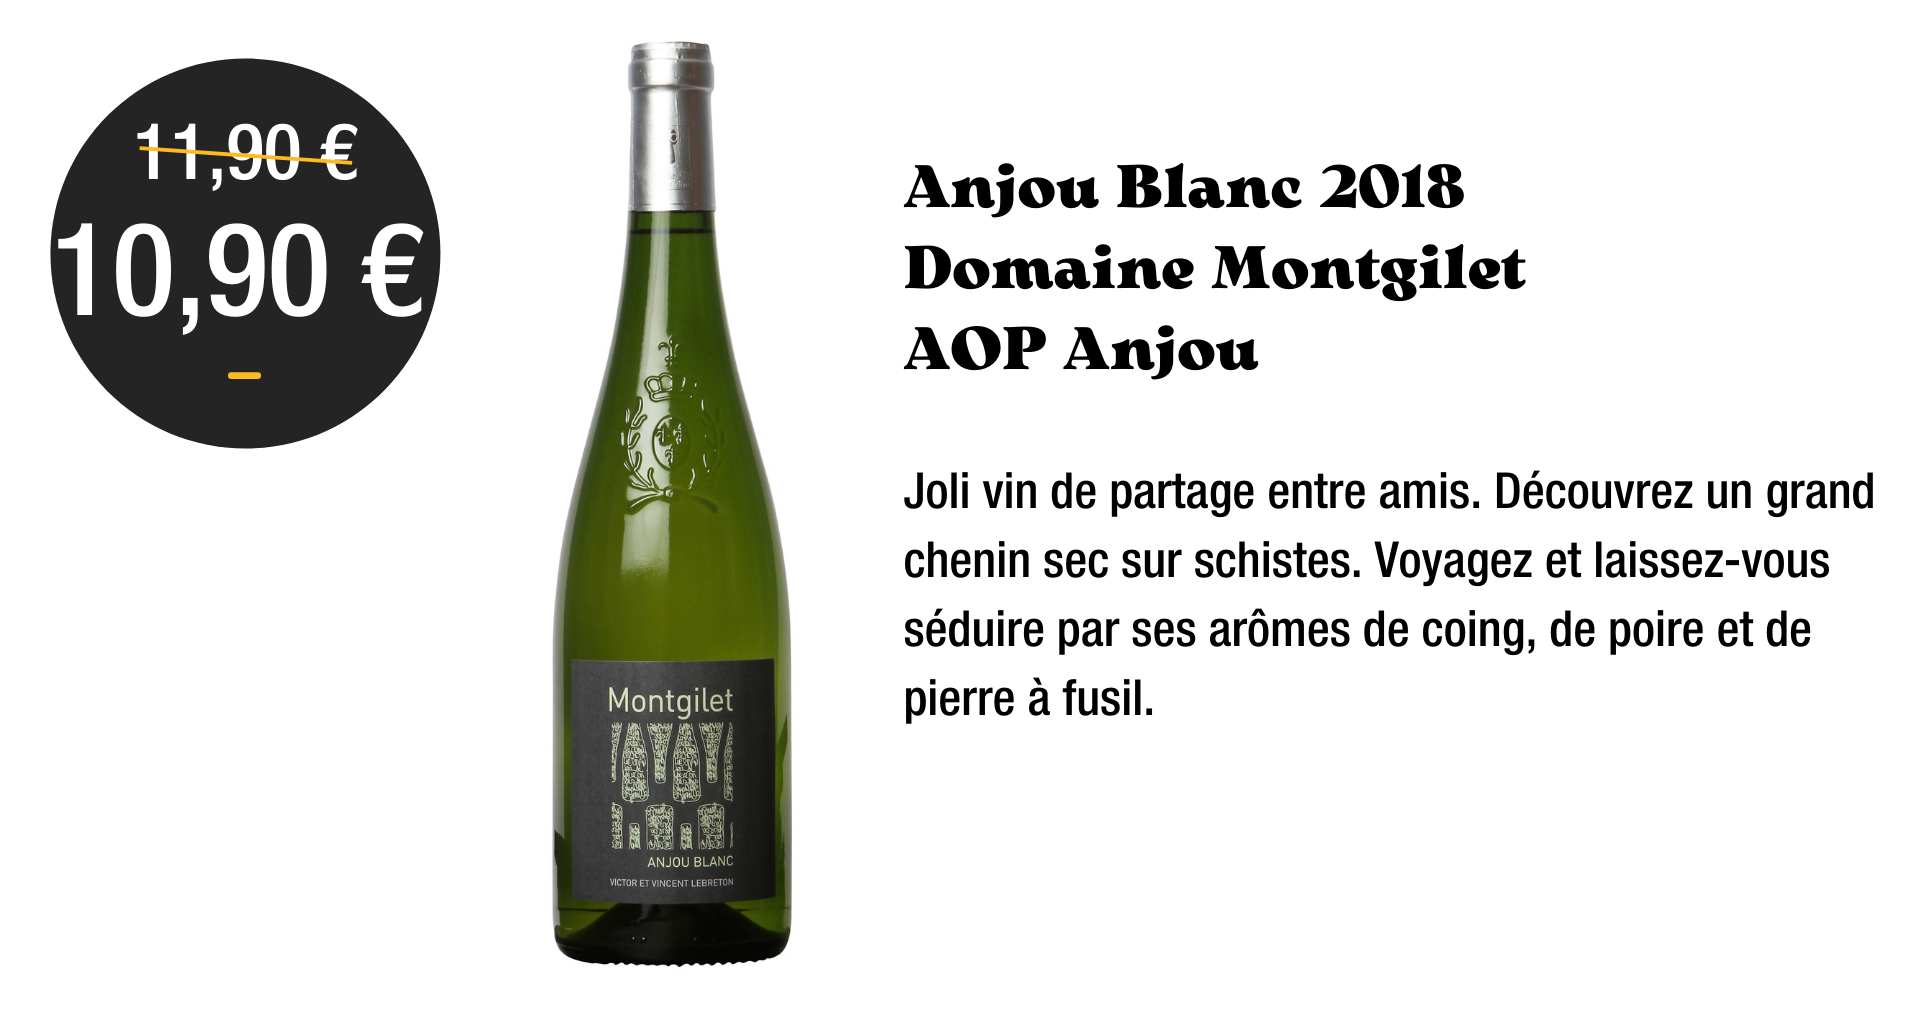 Anjou Blanc 2018